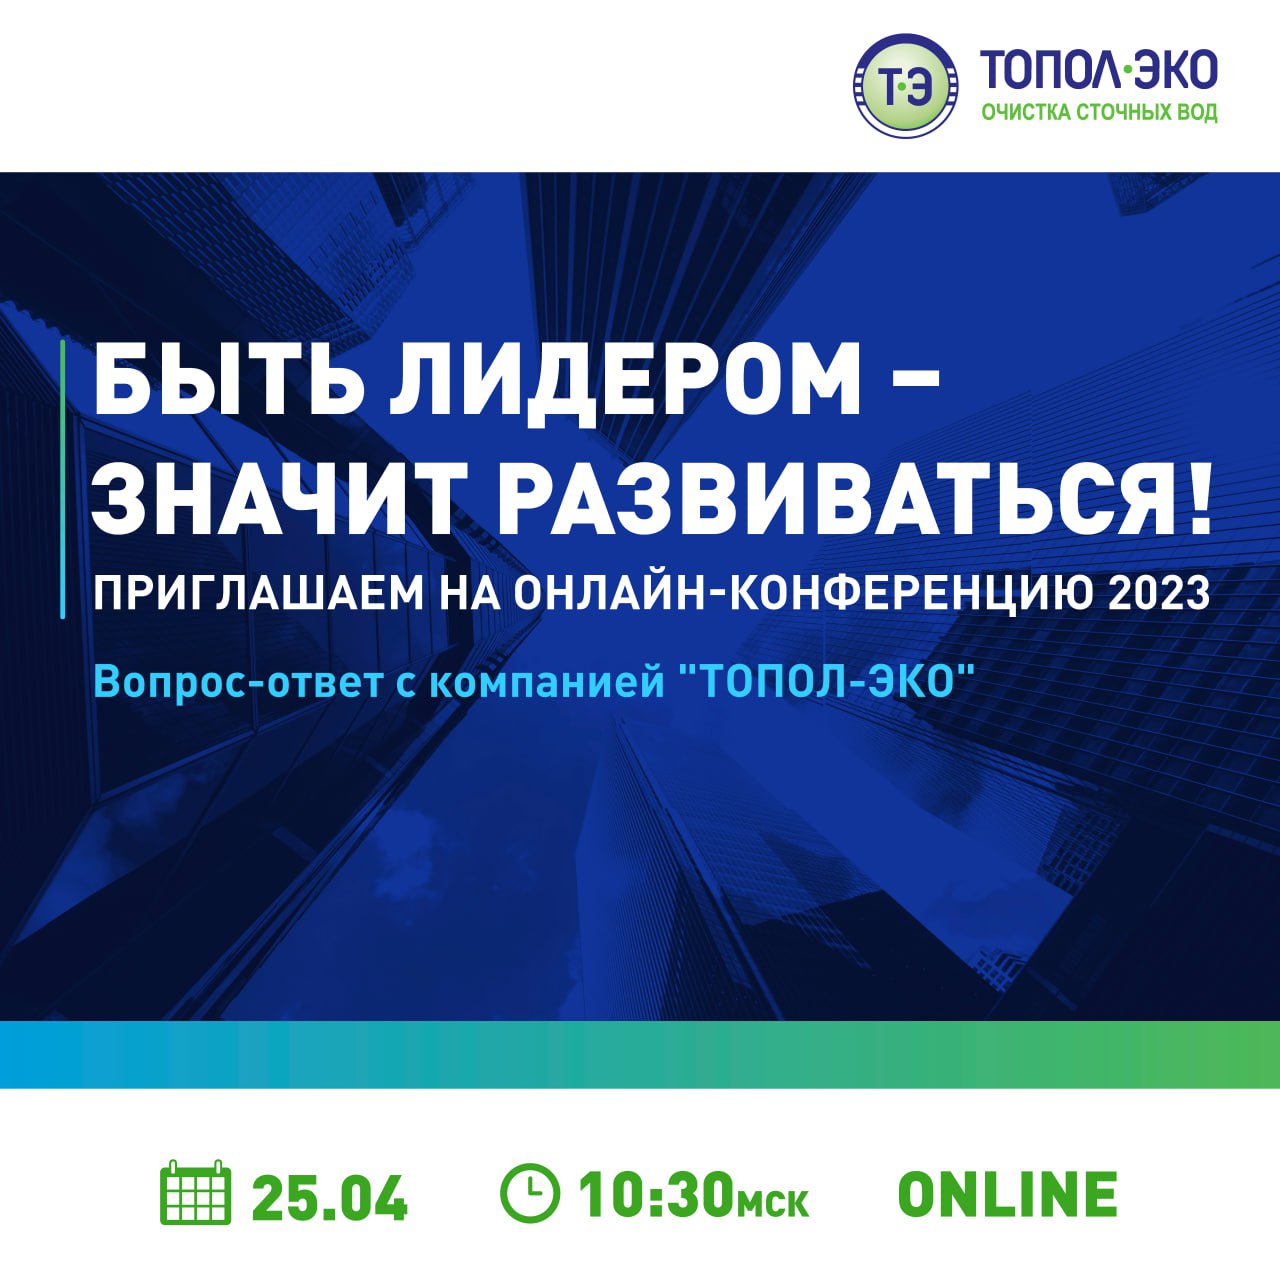 Открытая онлайн-конференция "Вопрос-ответ с компанией "ТОПОЛ-ЭКО"